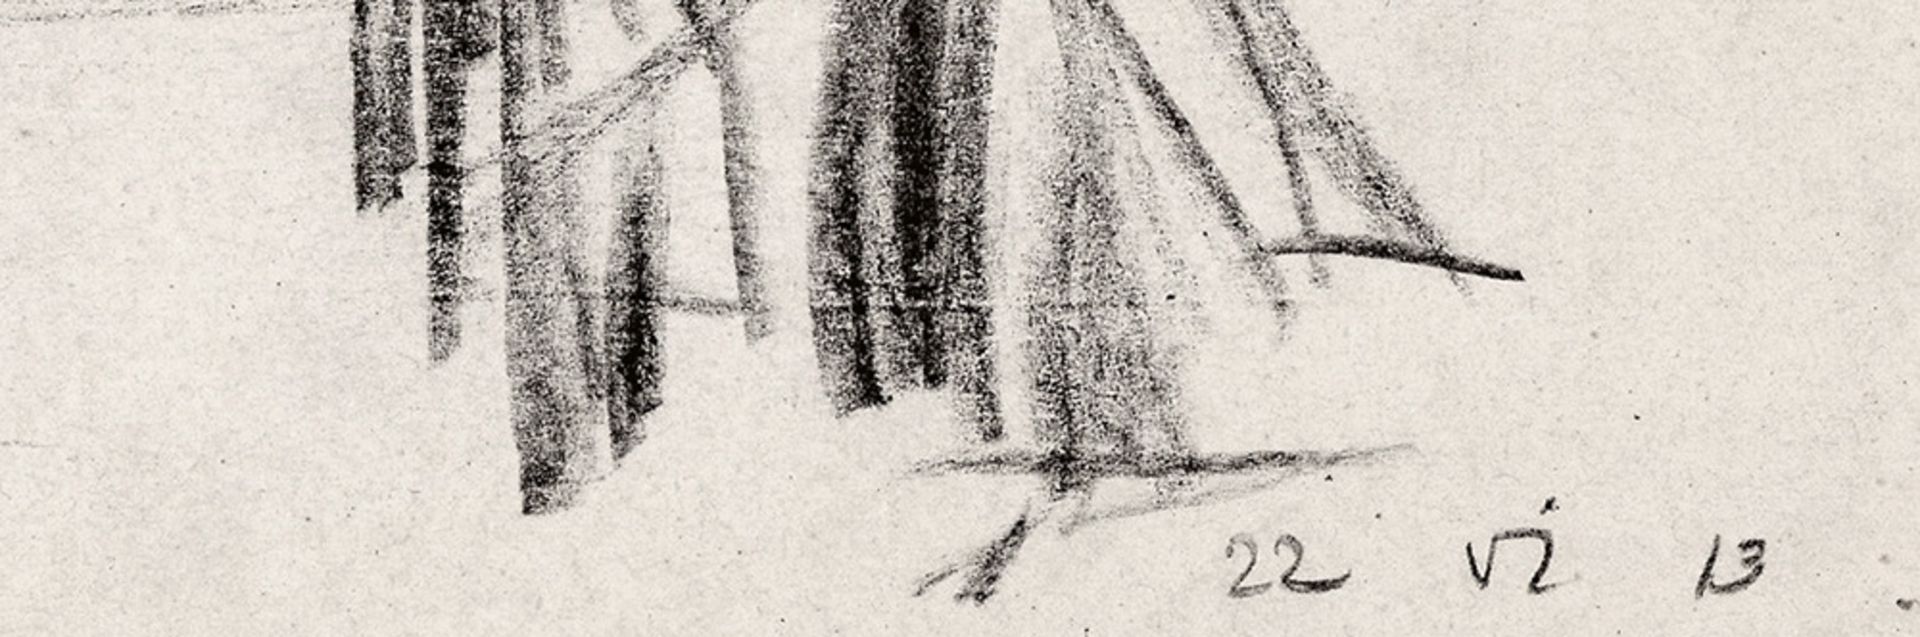 Lyonel Feininger – Badende (Bathers). - Image 2 of 2